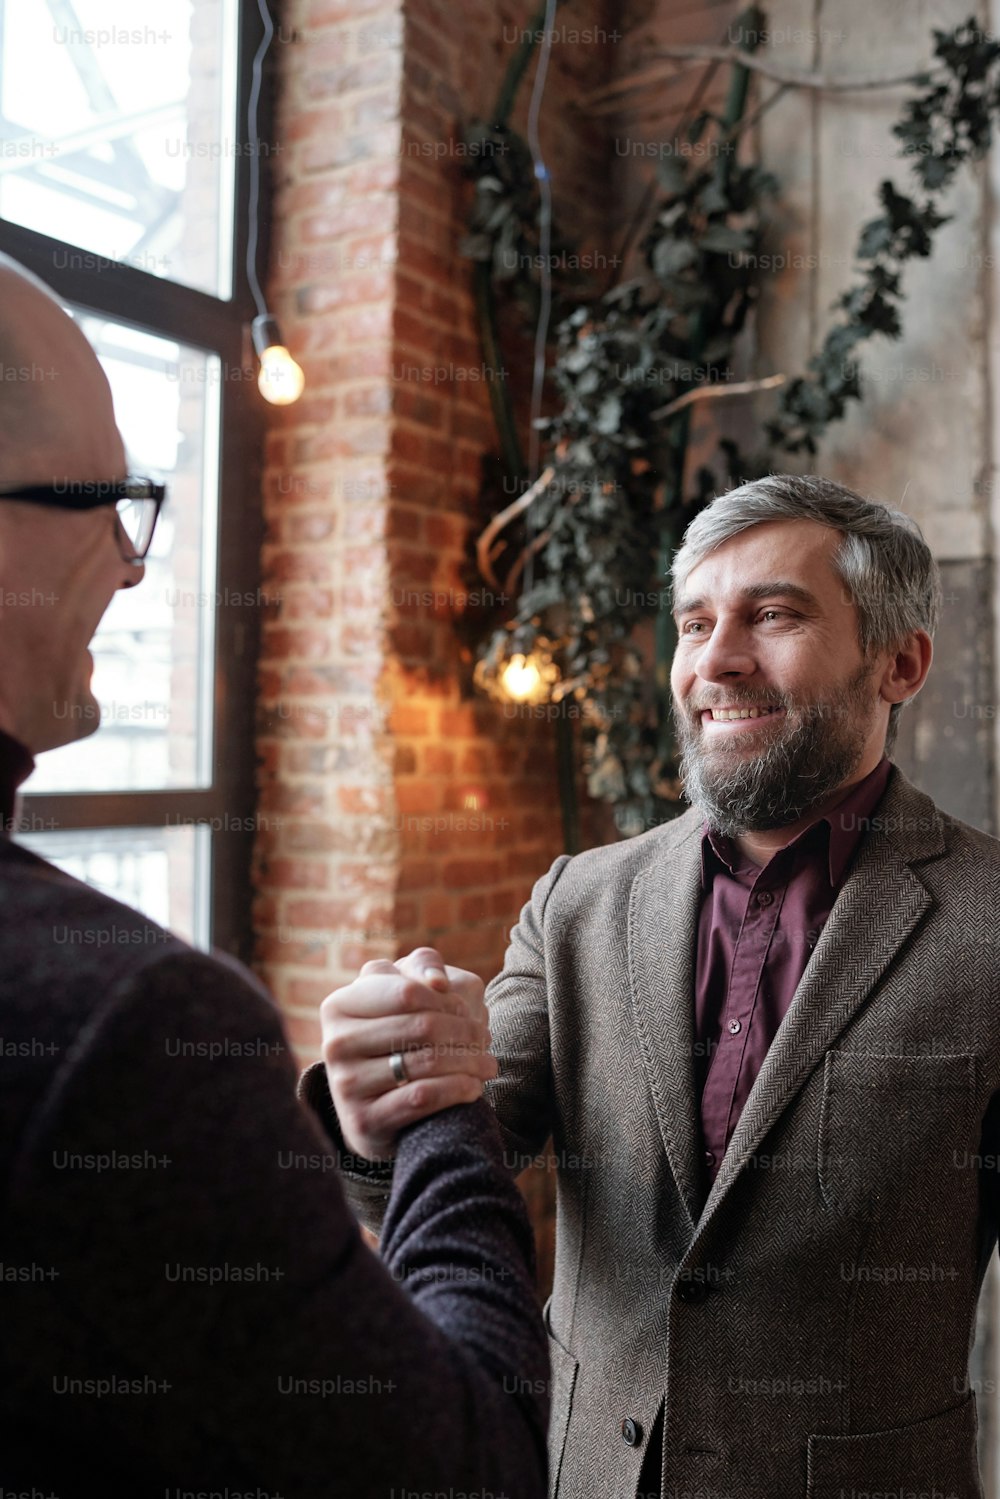 強い関係の象徴として同僚と握手するジャケットを着た笑顔のひげを生やしたビジネスマン